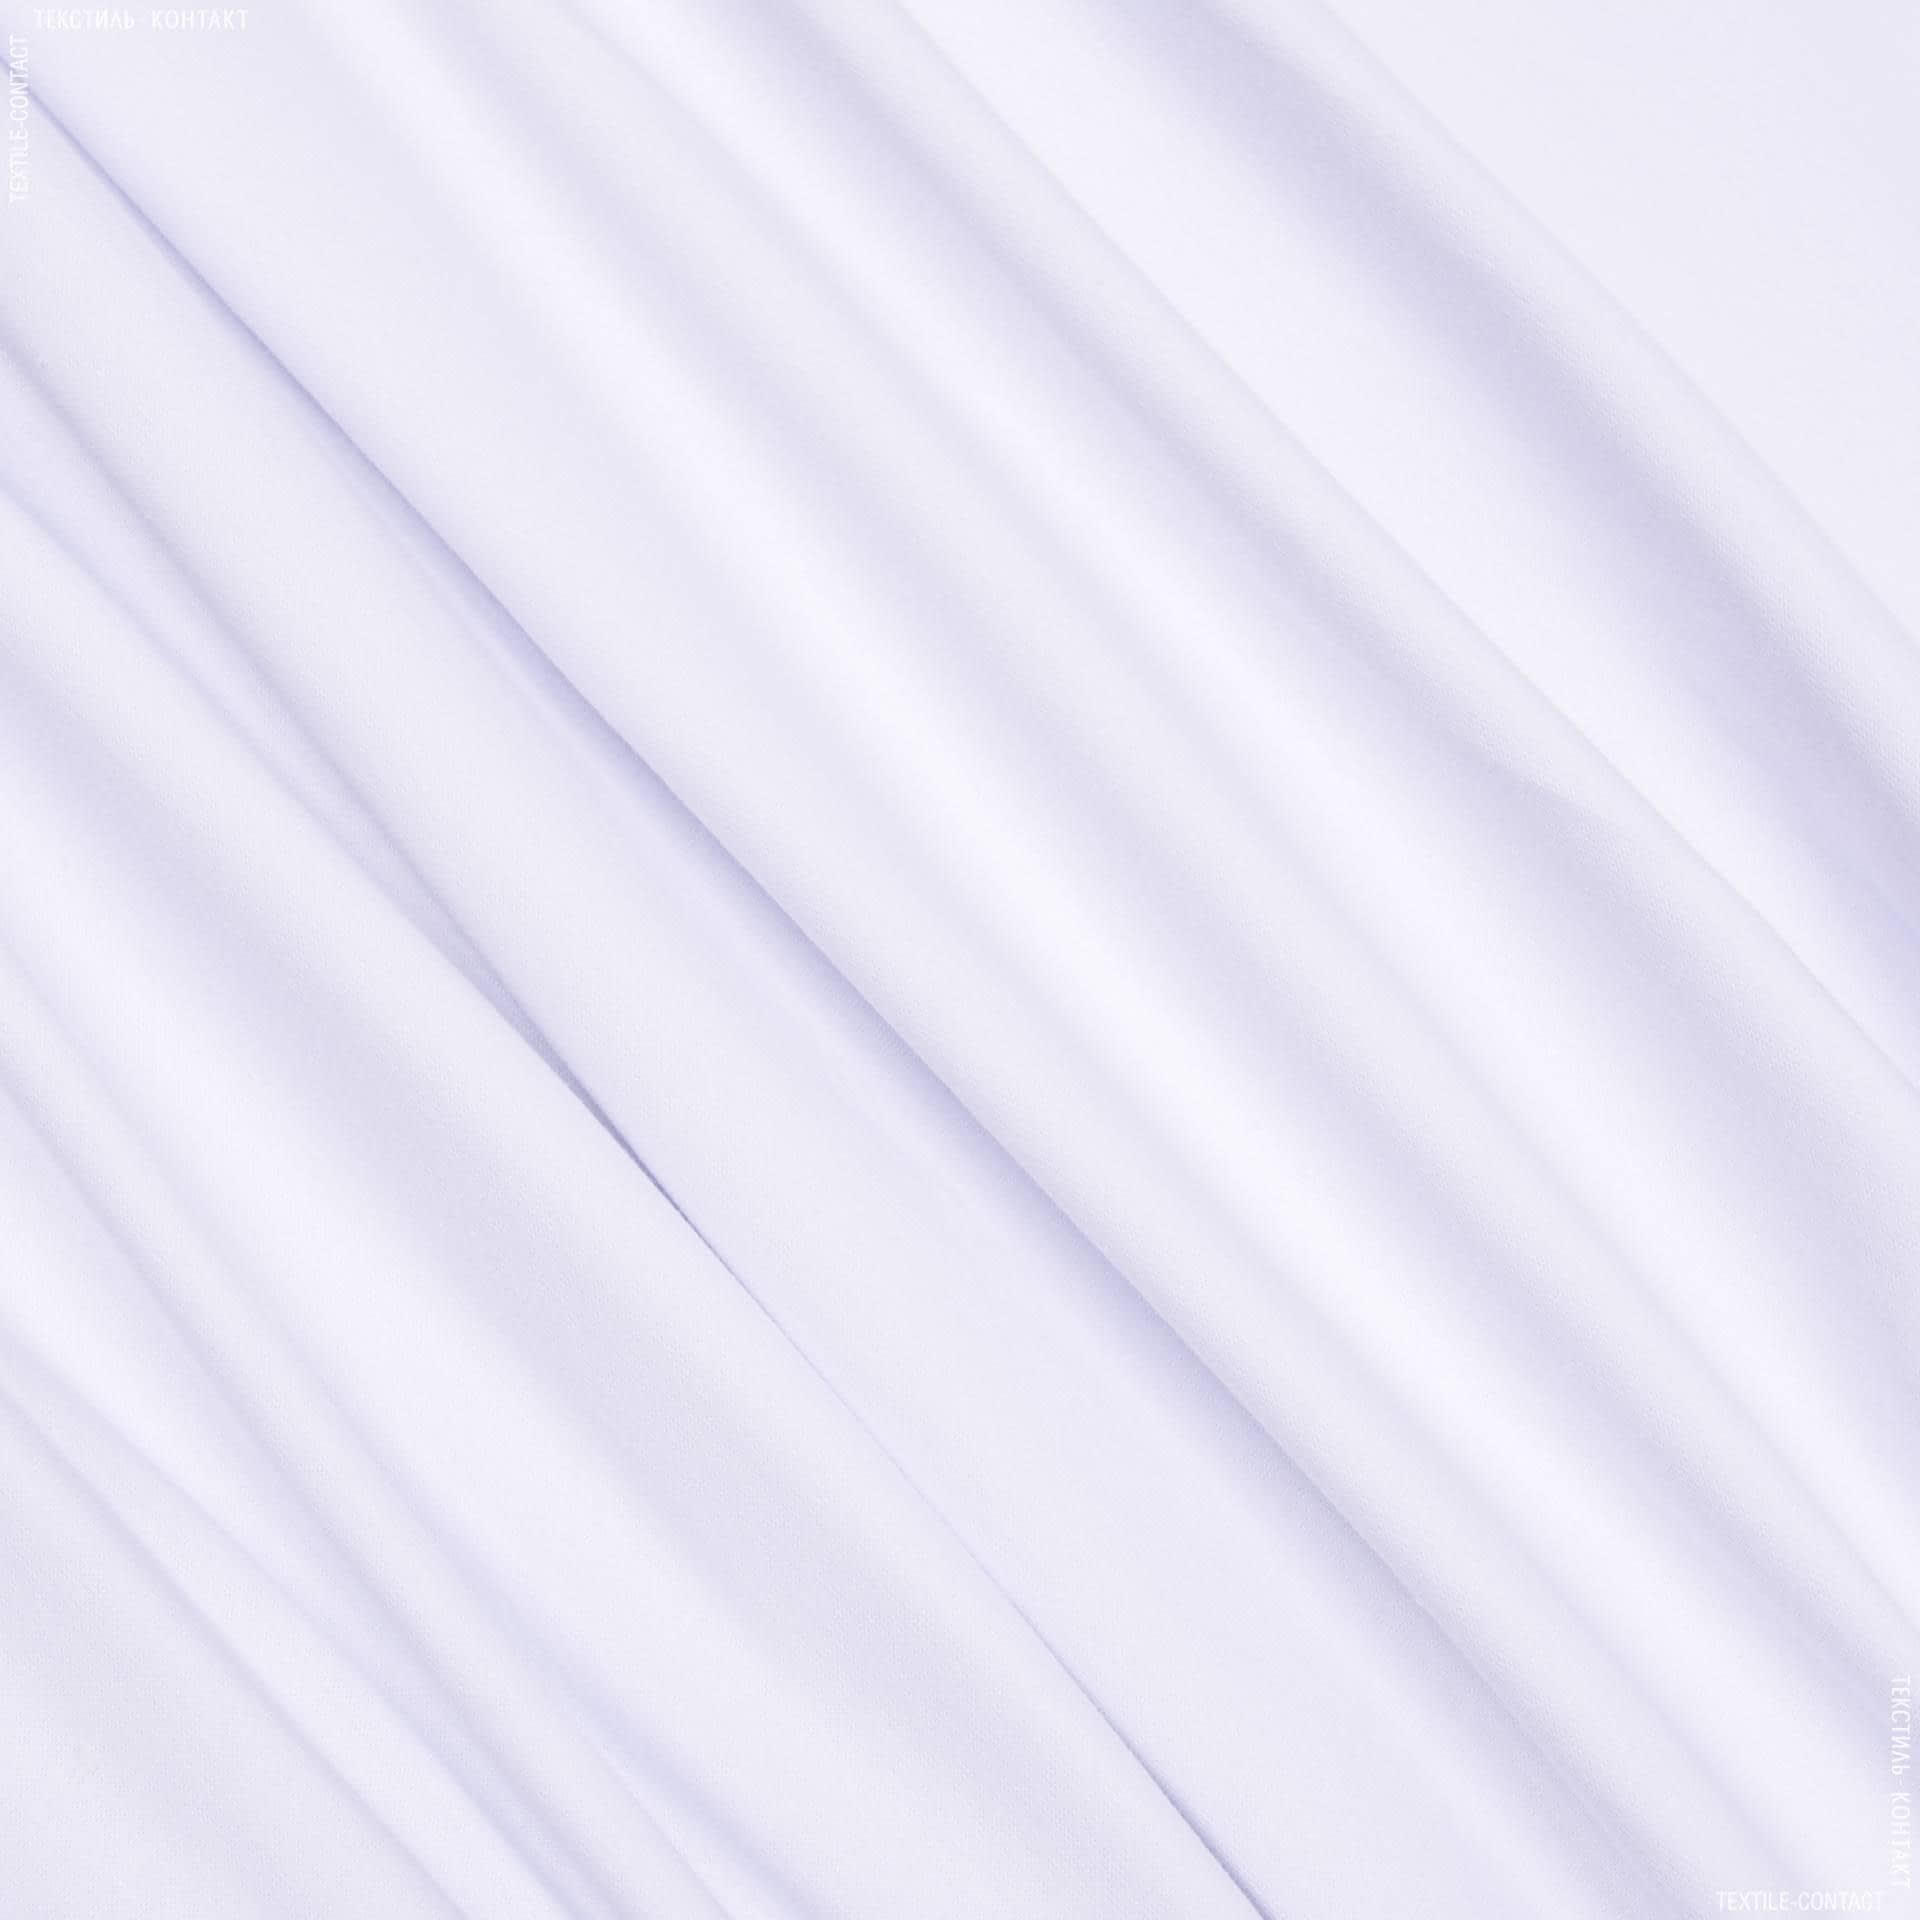 Тканини для спортивного одягу - Ластічне полотно біле